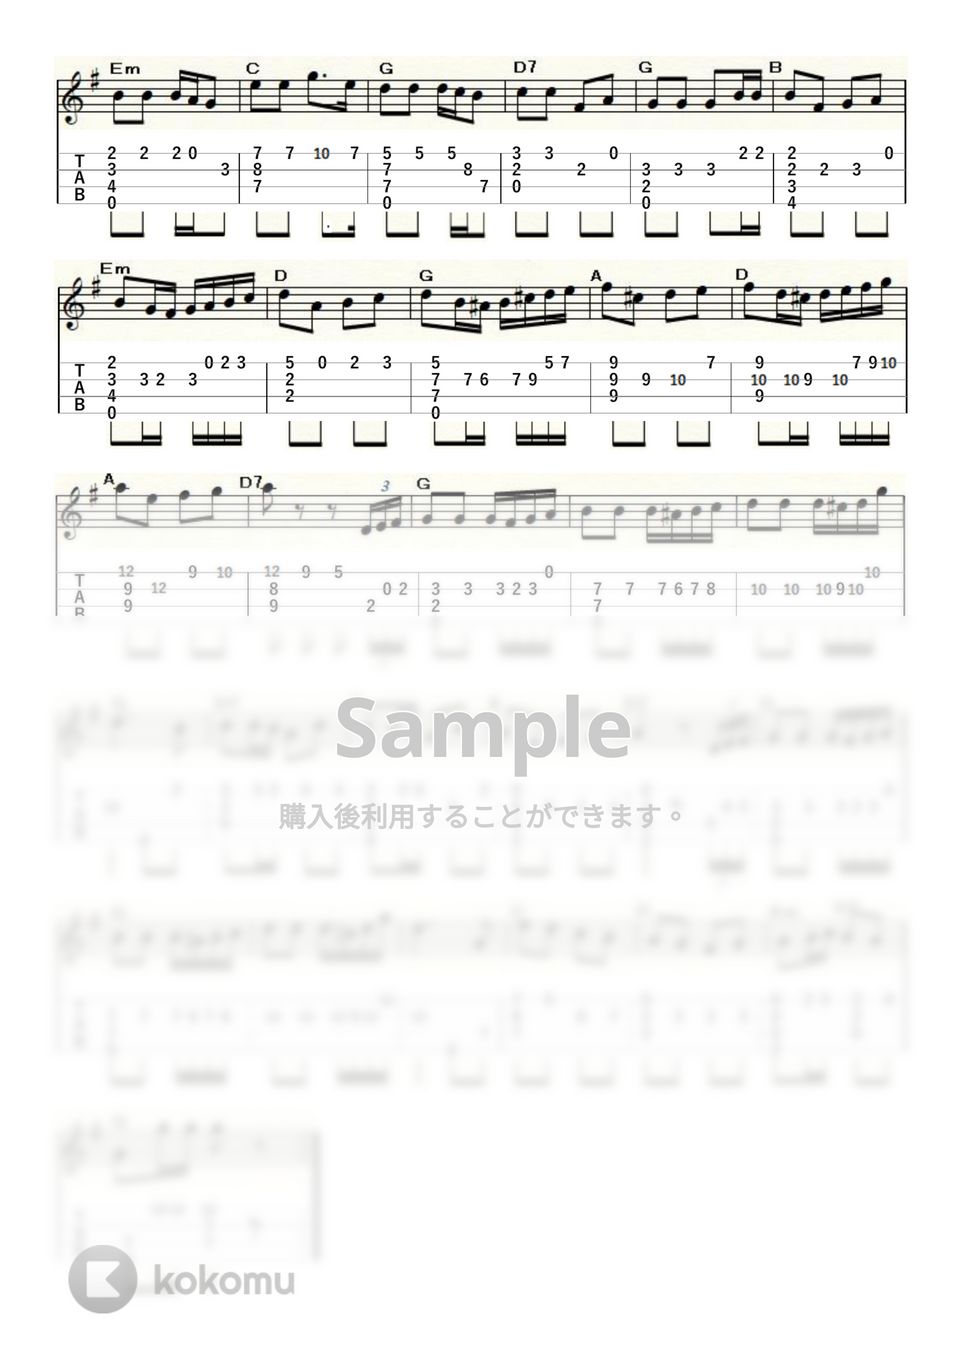 ミーチャム - アメリカン・パトロール (ｳｸﾚﾚｿﾛ/High-G・Low-G/中級～上級) by ukulelepapa